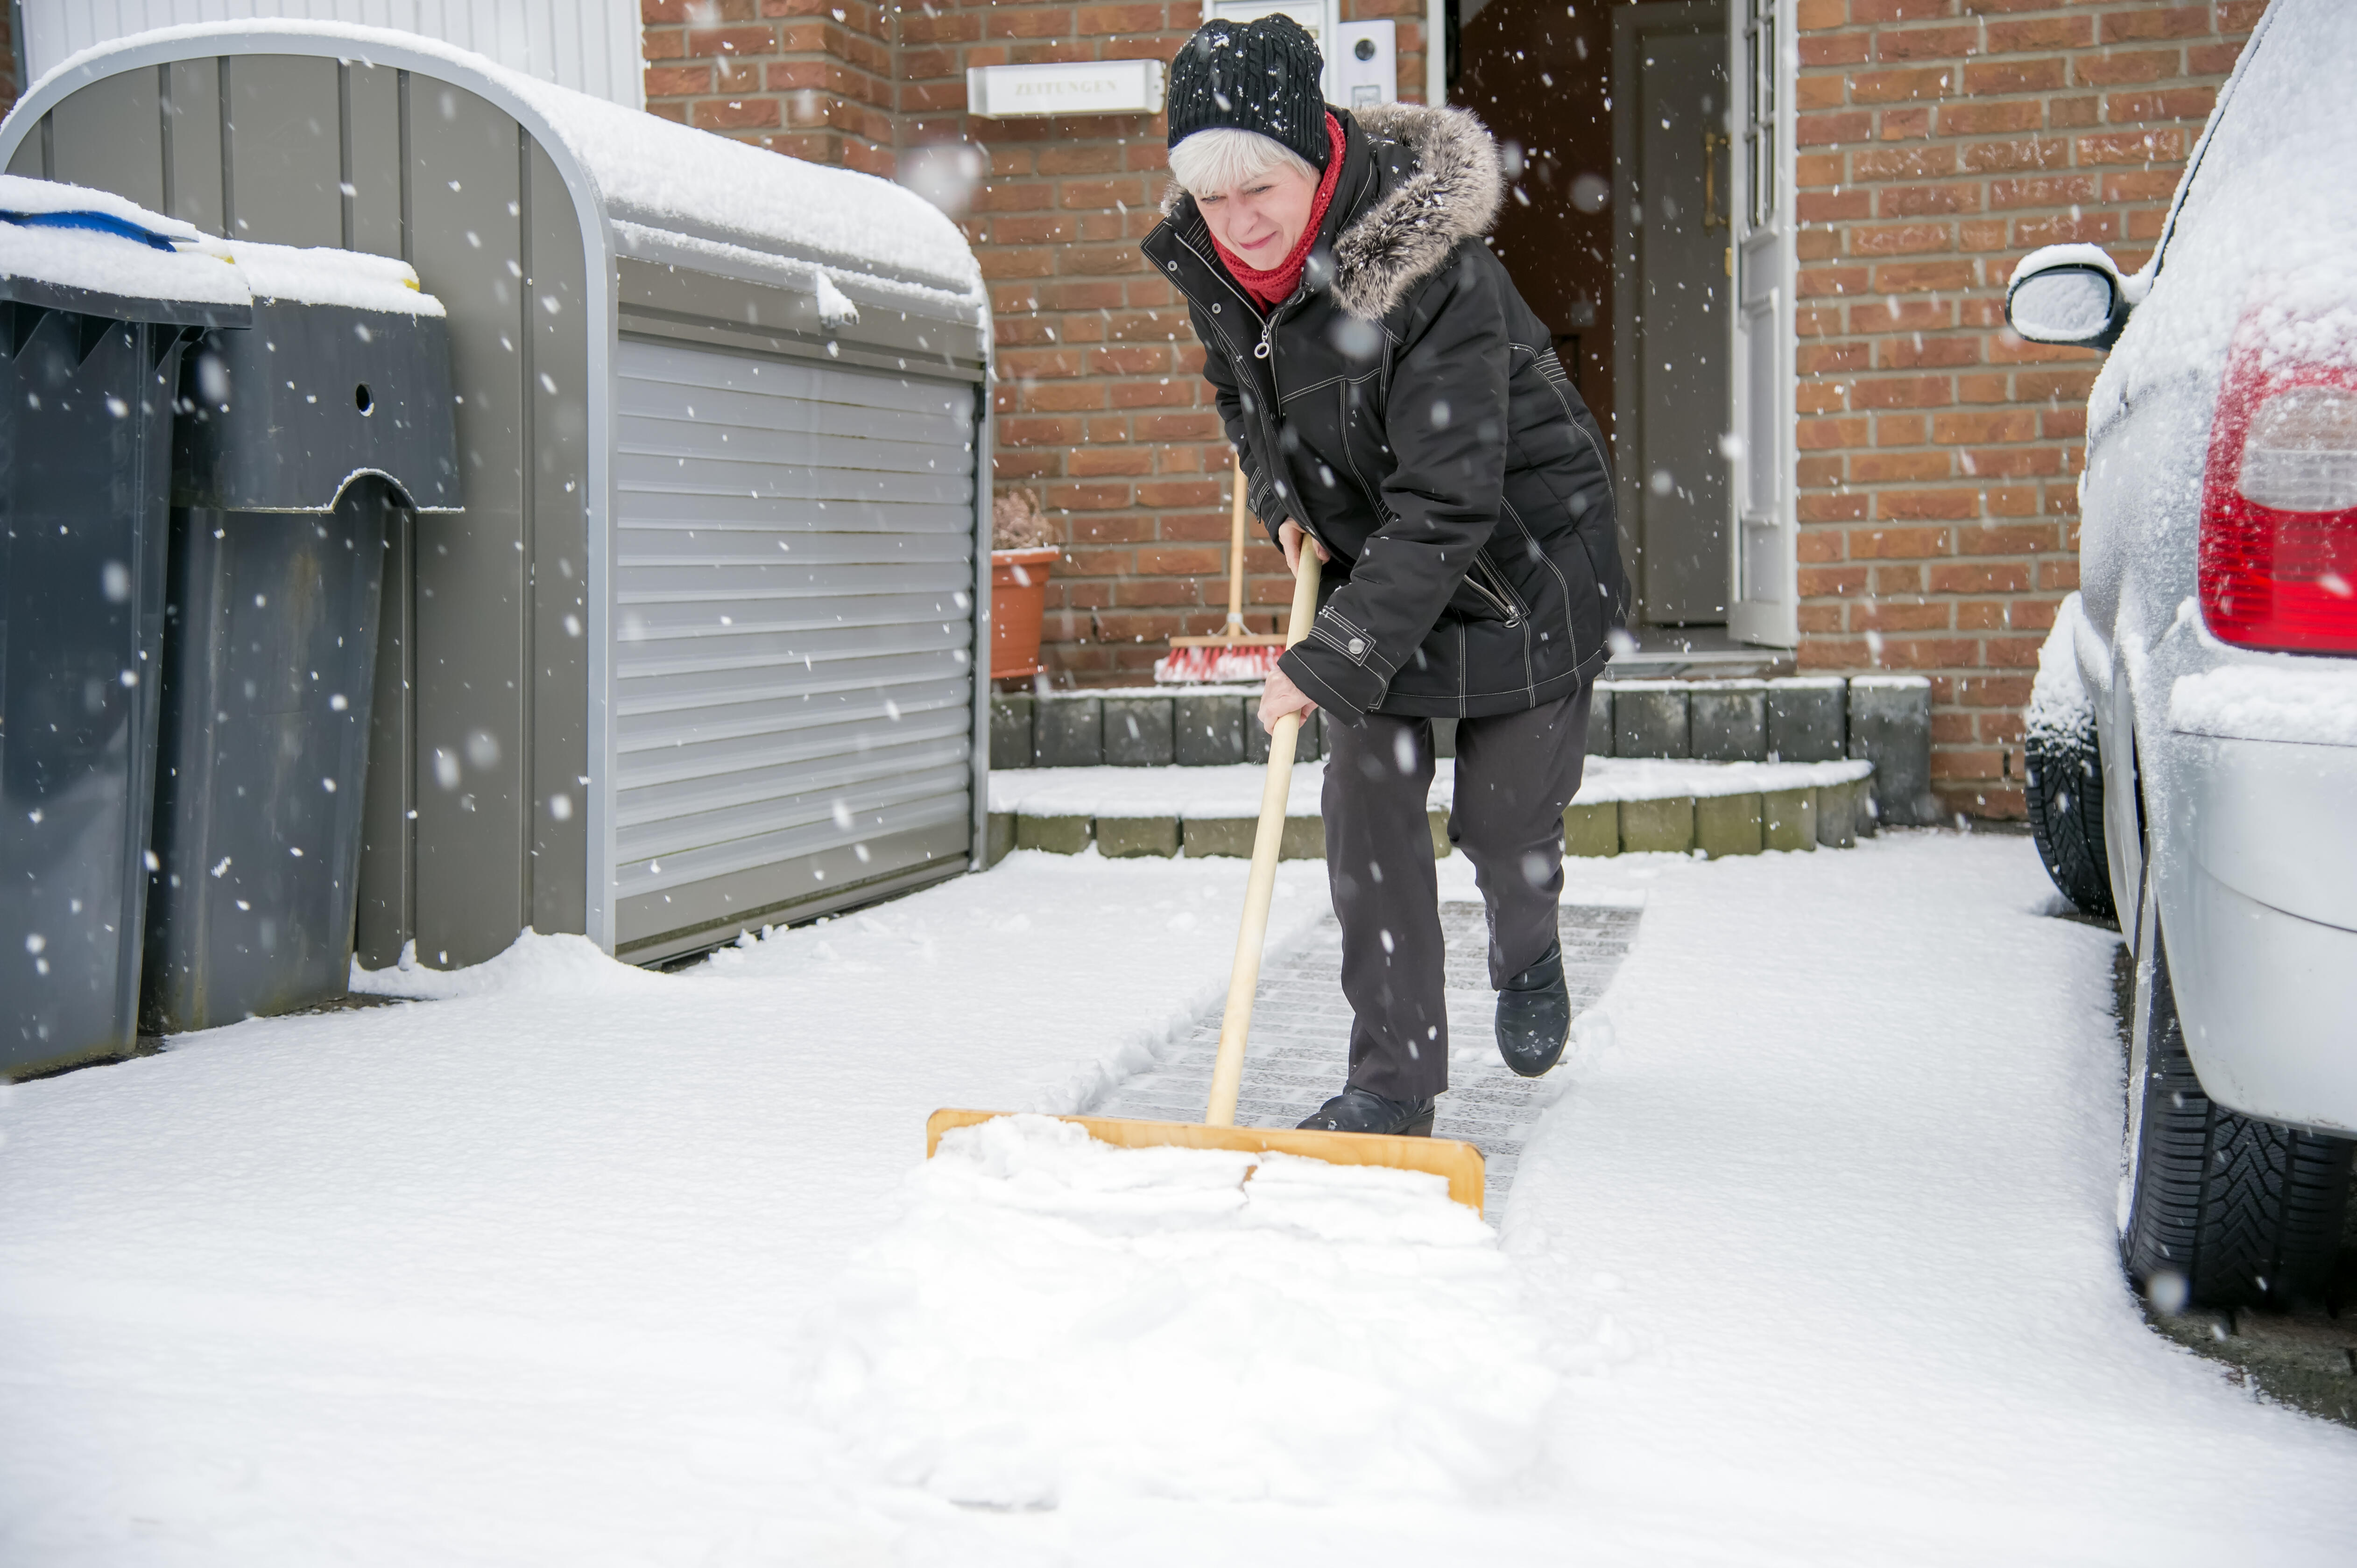 Прийти неожиданно дорожки не расчищены. Женщина убирает снег. Зимняя лопата. Убирает снег лопатой. Чистильщик снега.